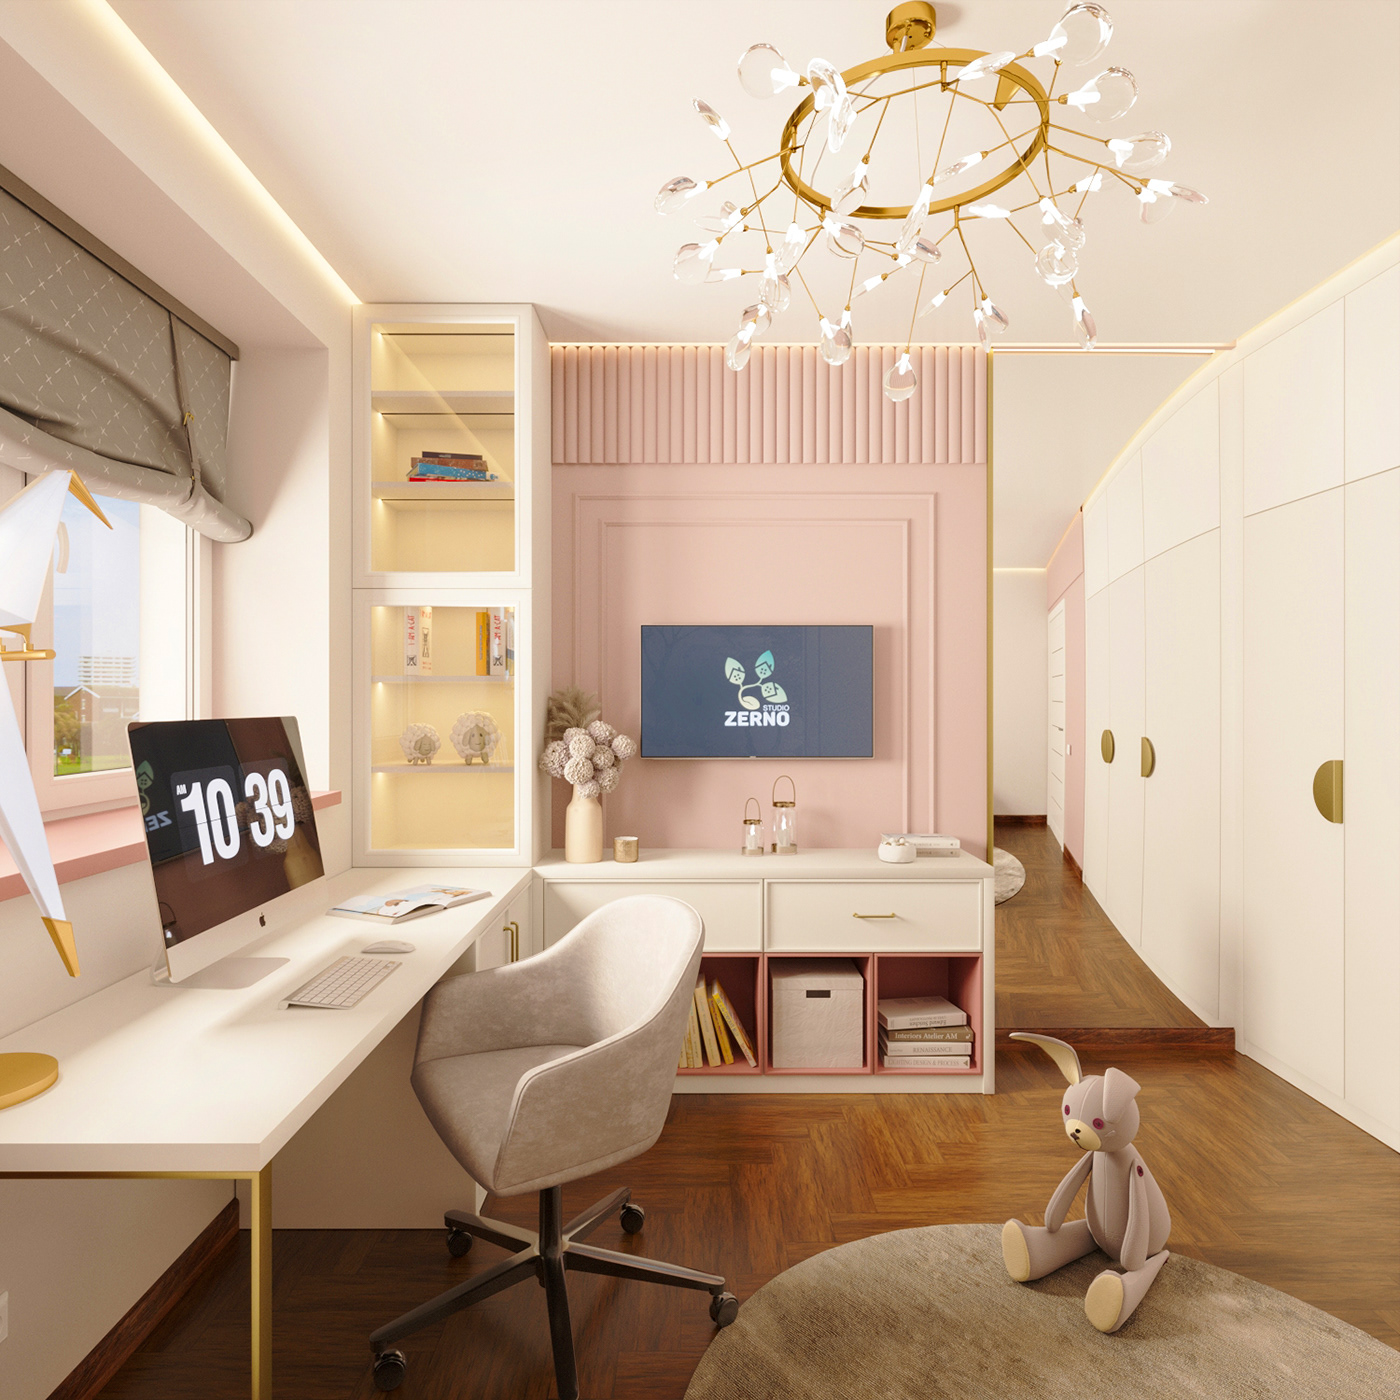 3ds max childrensroom corona interior design  Render visualization детская детскаямебель дизайн интерьера Дизайндетскойдлядевочек